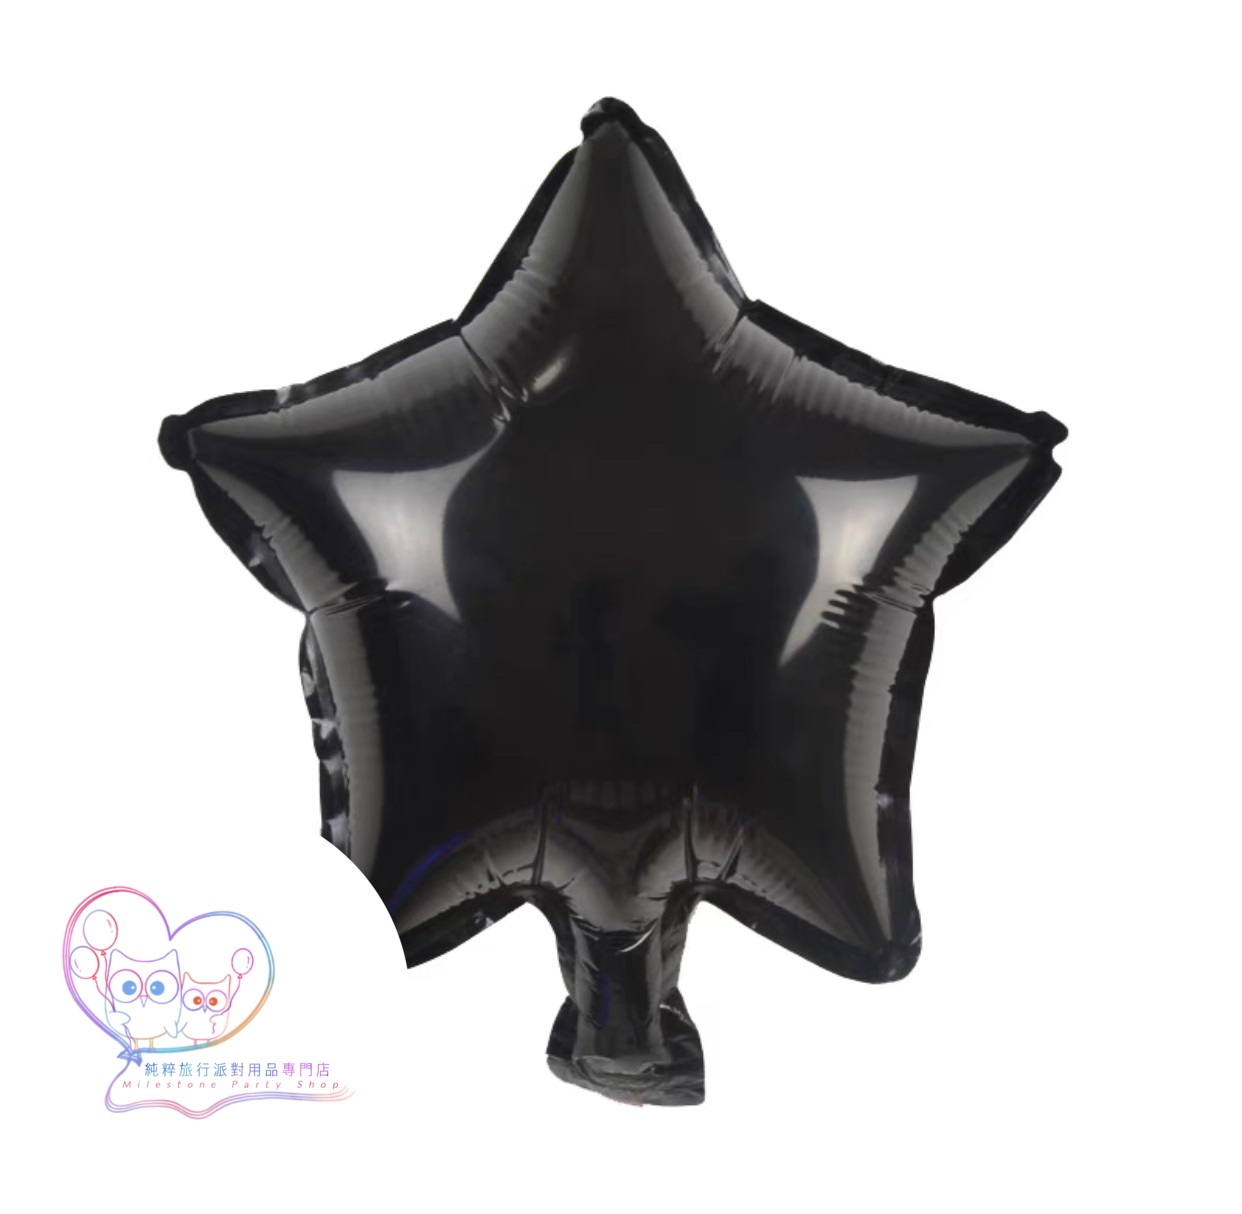 5吋星星鋁膜氣球 (黑色) 5S11